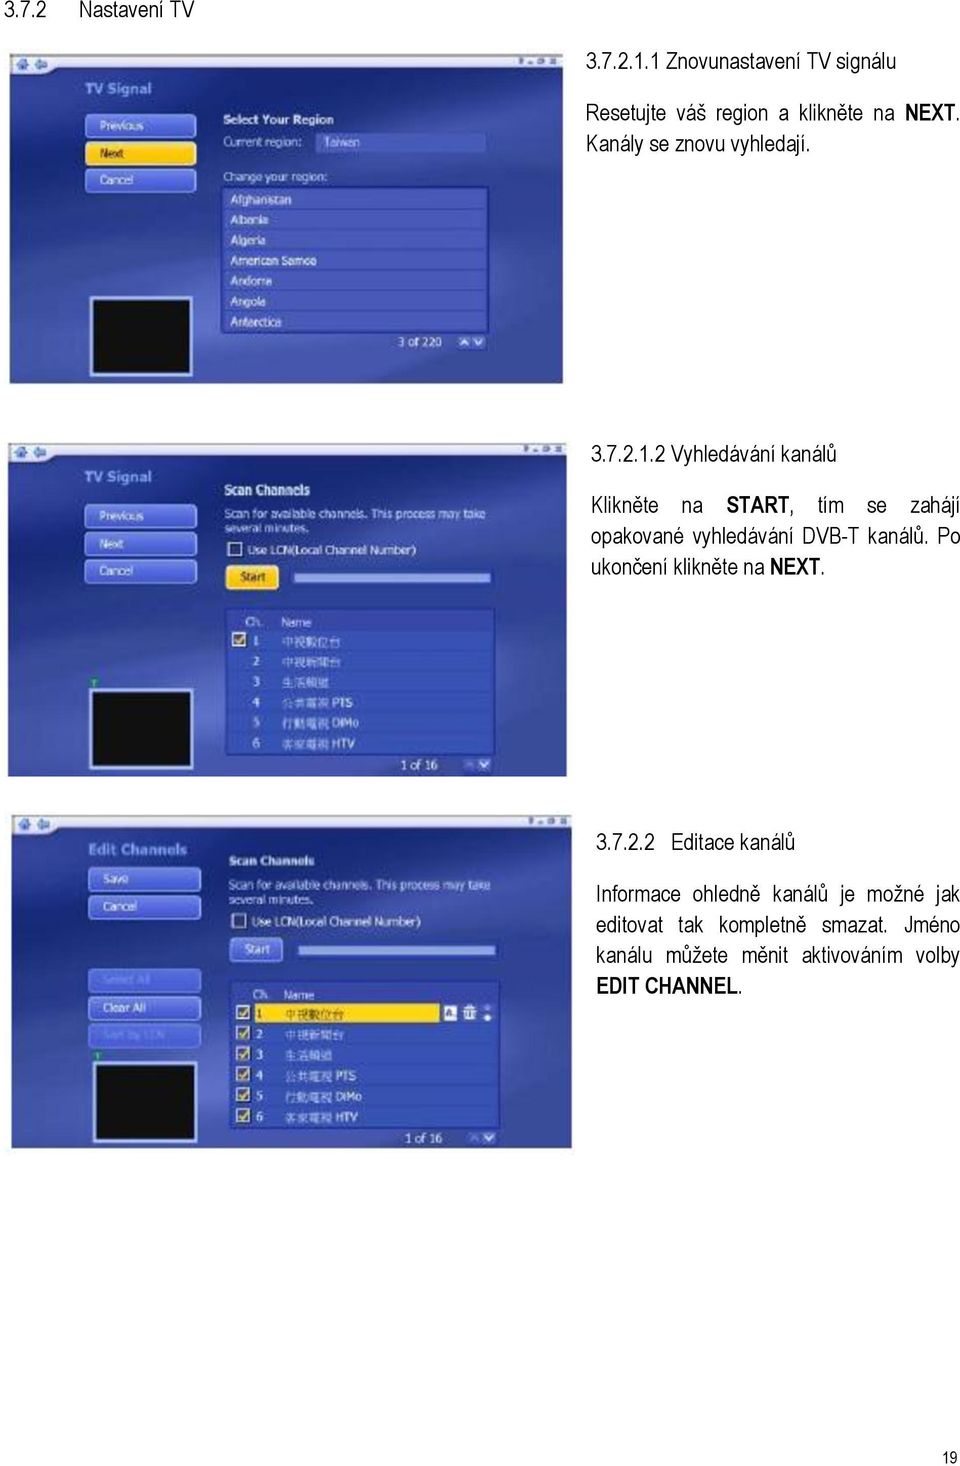 2 Vyhledávání kanálů Klikněte na START, tím se zahájí opakované vyhledávání DVB-T kanálů.